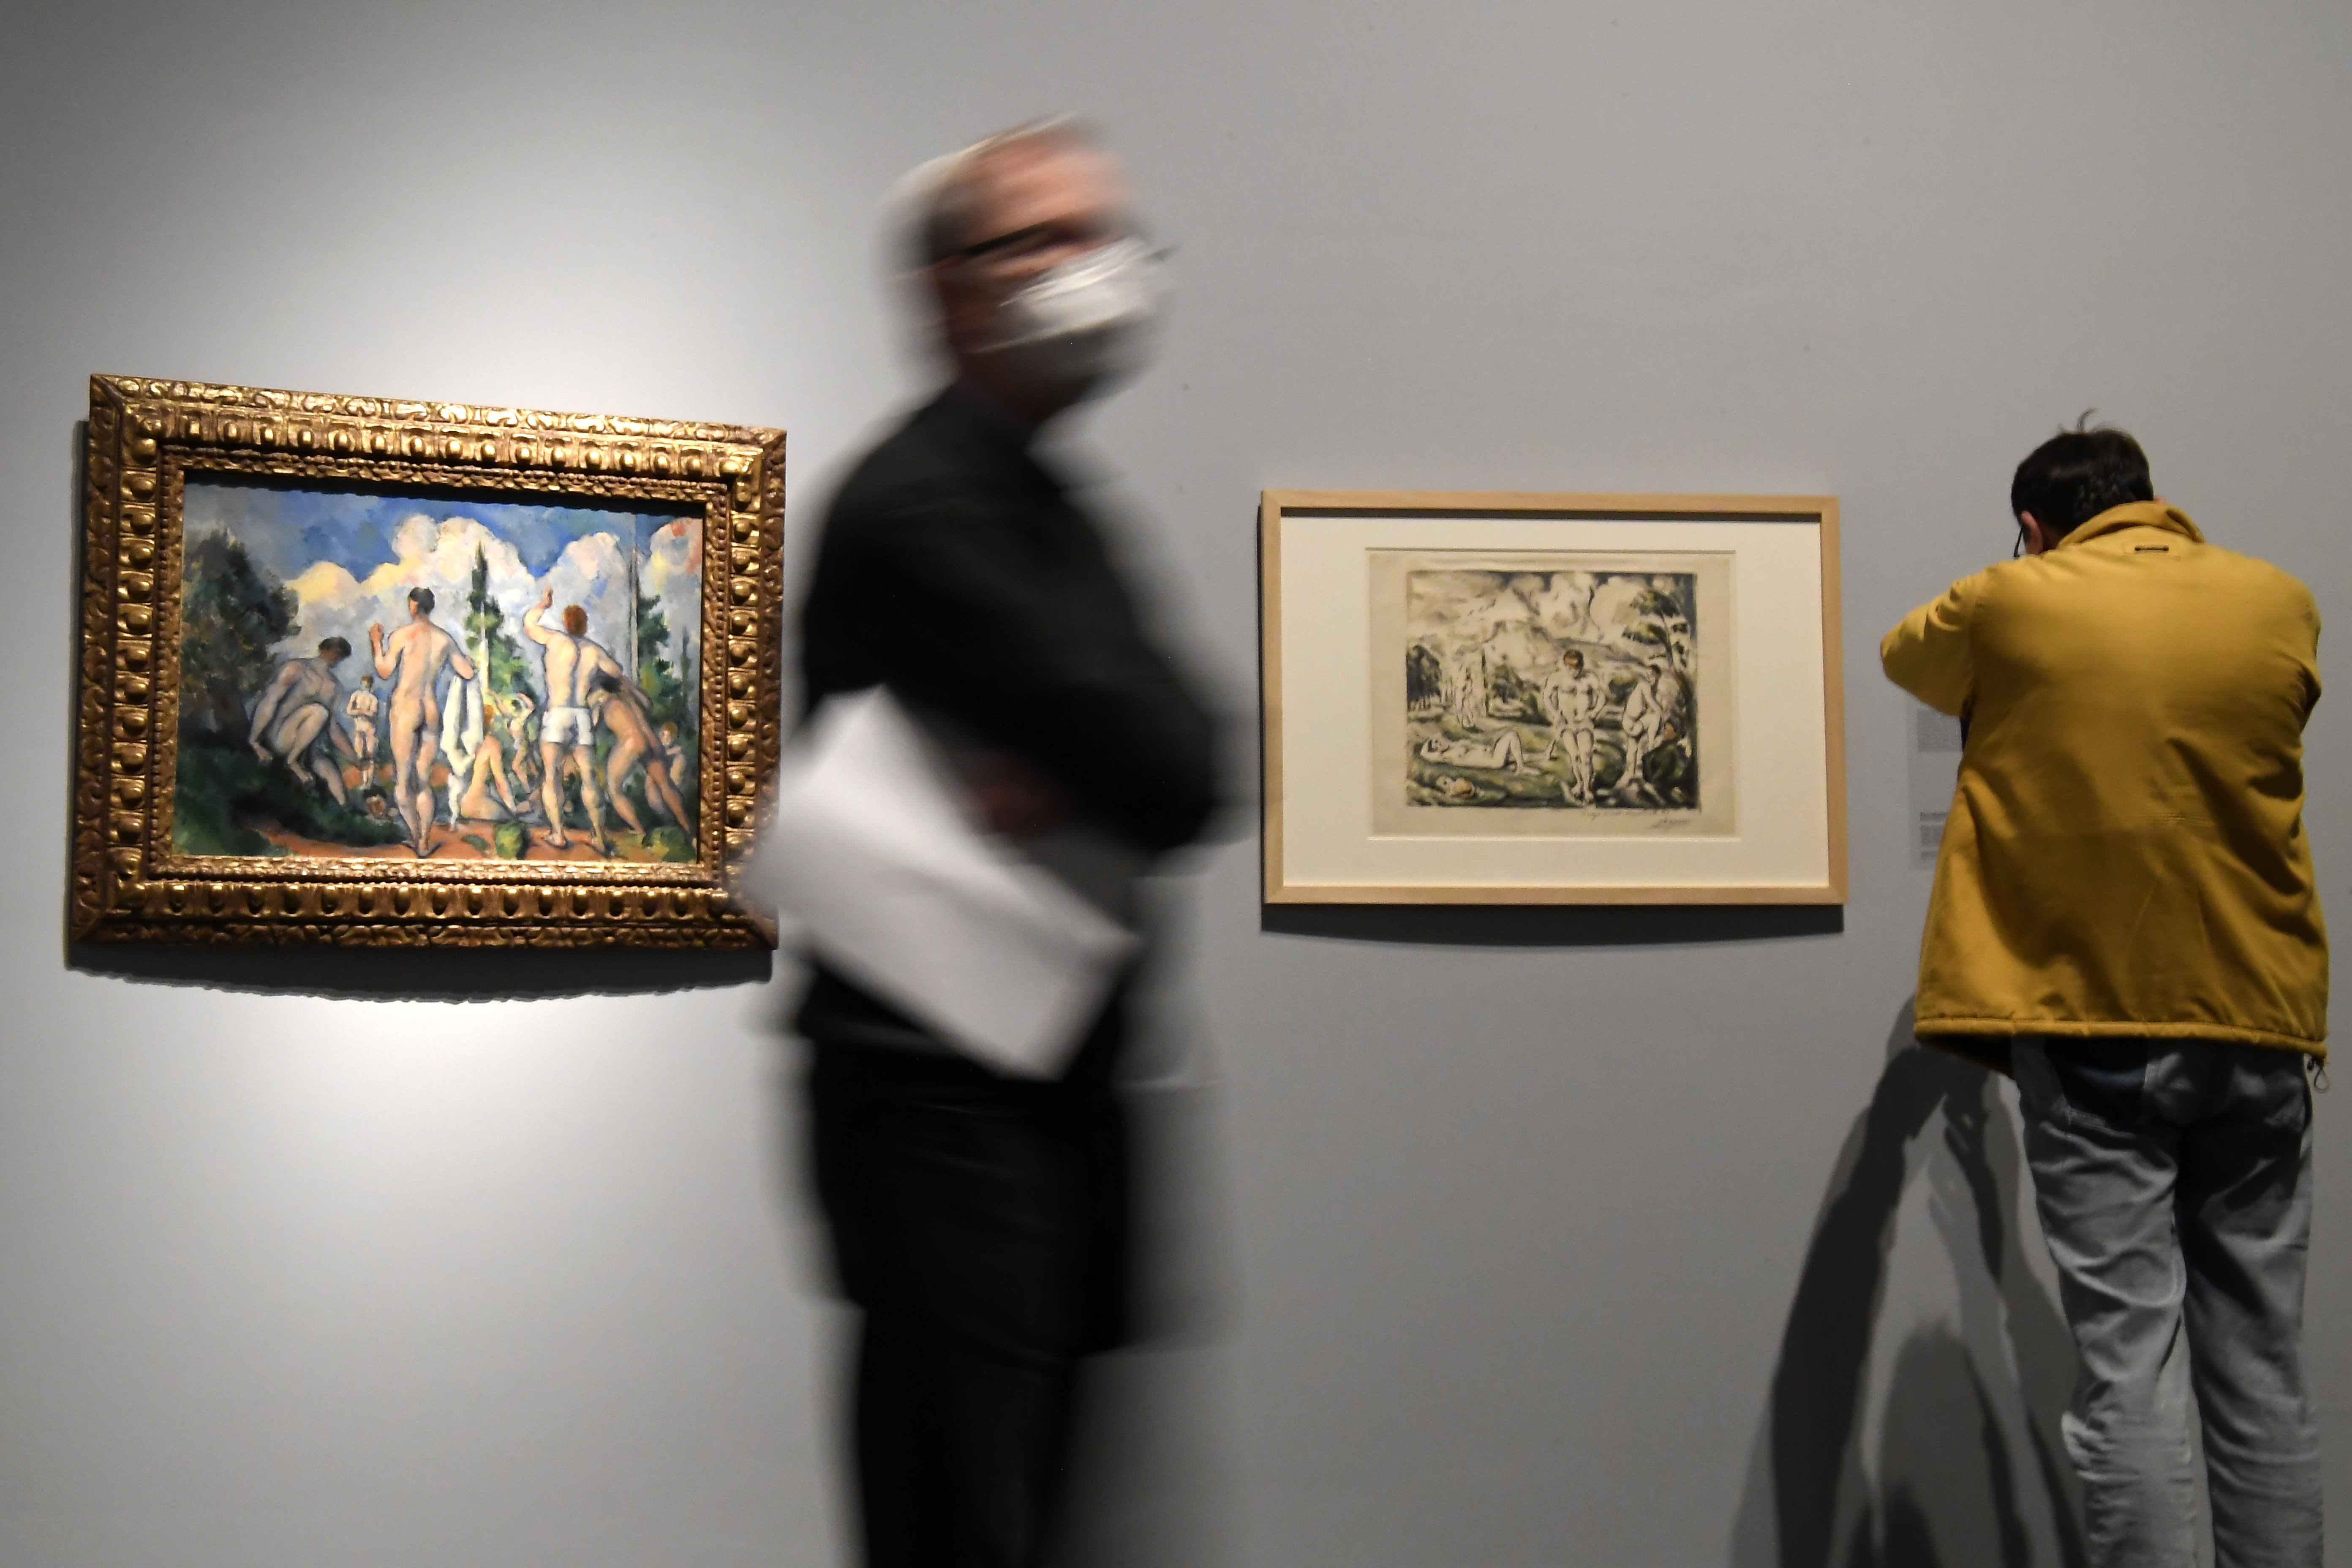 227 millió forintért vett egy Cezanne-akvarellt a Szépművészeti